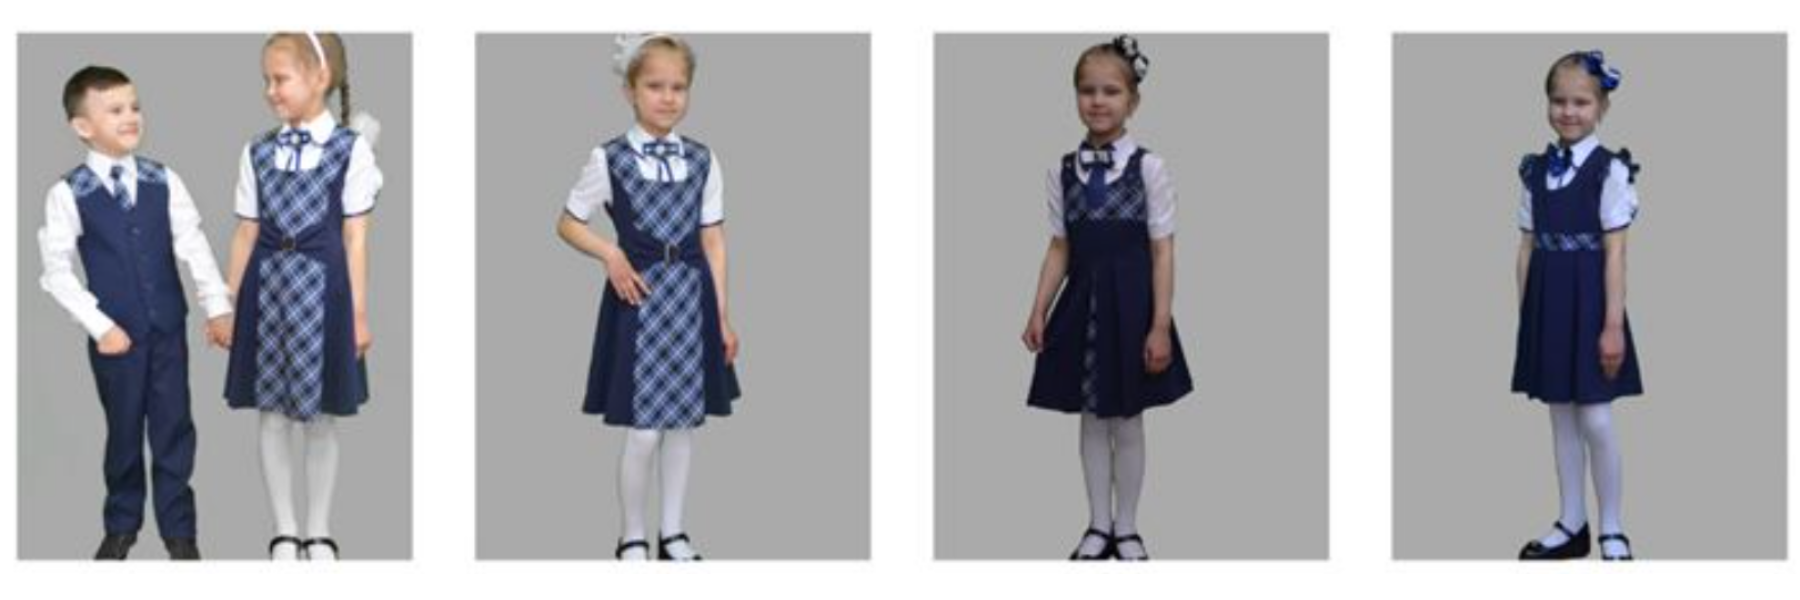 Изображения школьная формы для учащихся 1-4 классов.